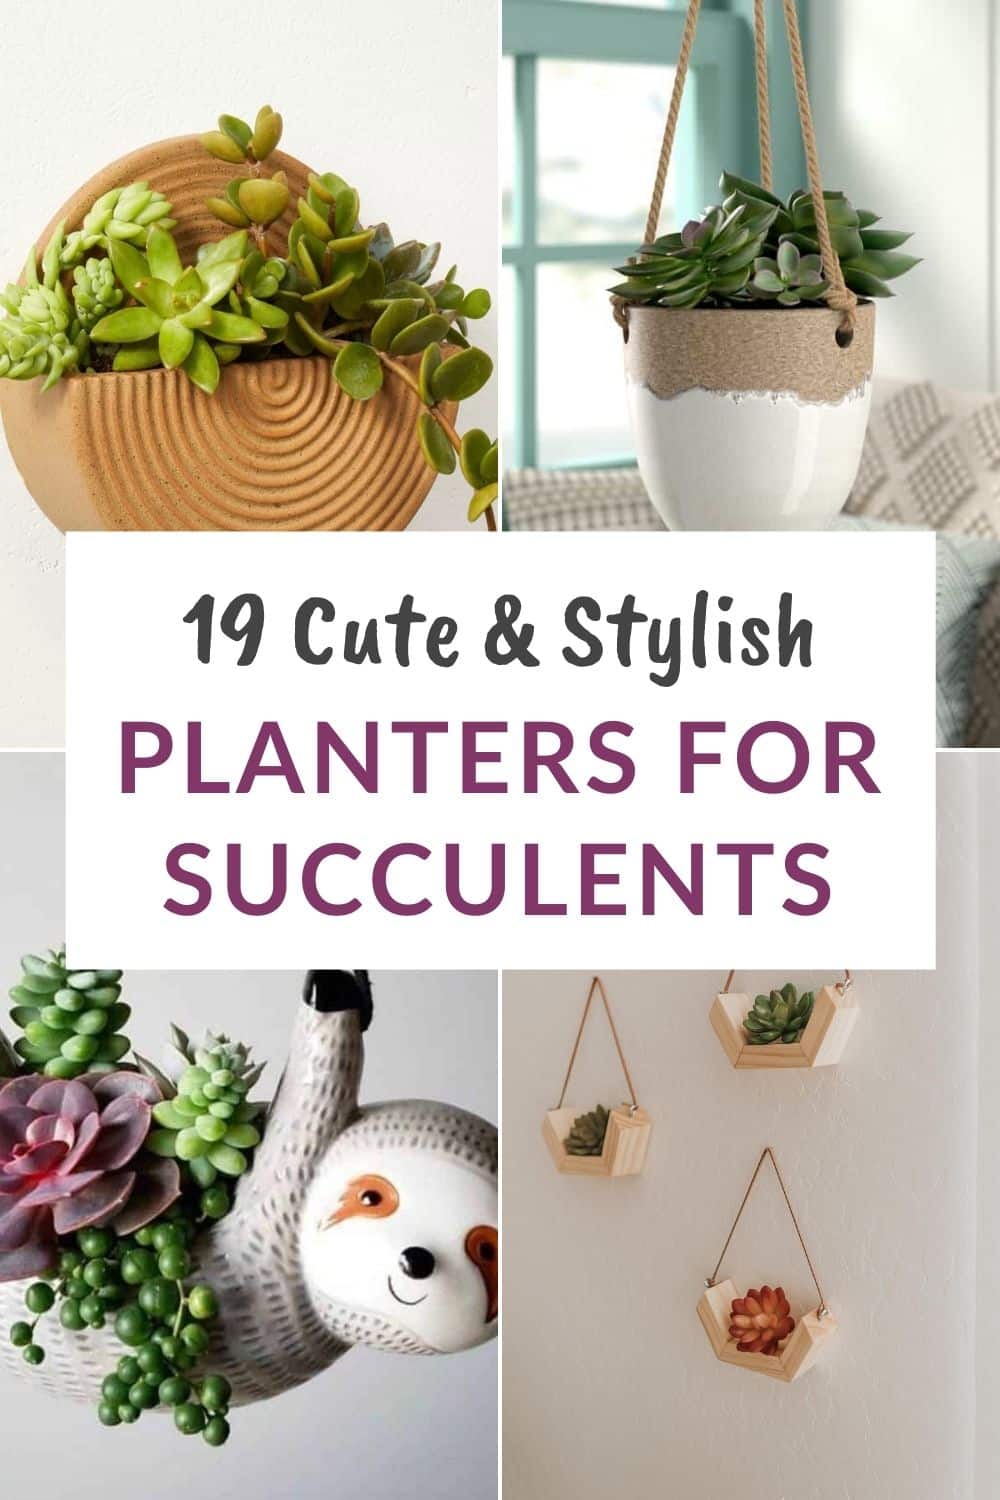  19 Hangplanters foar succulenten